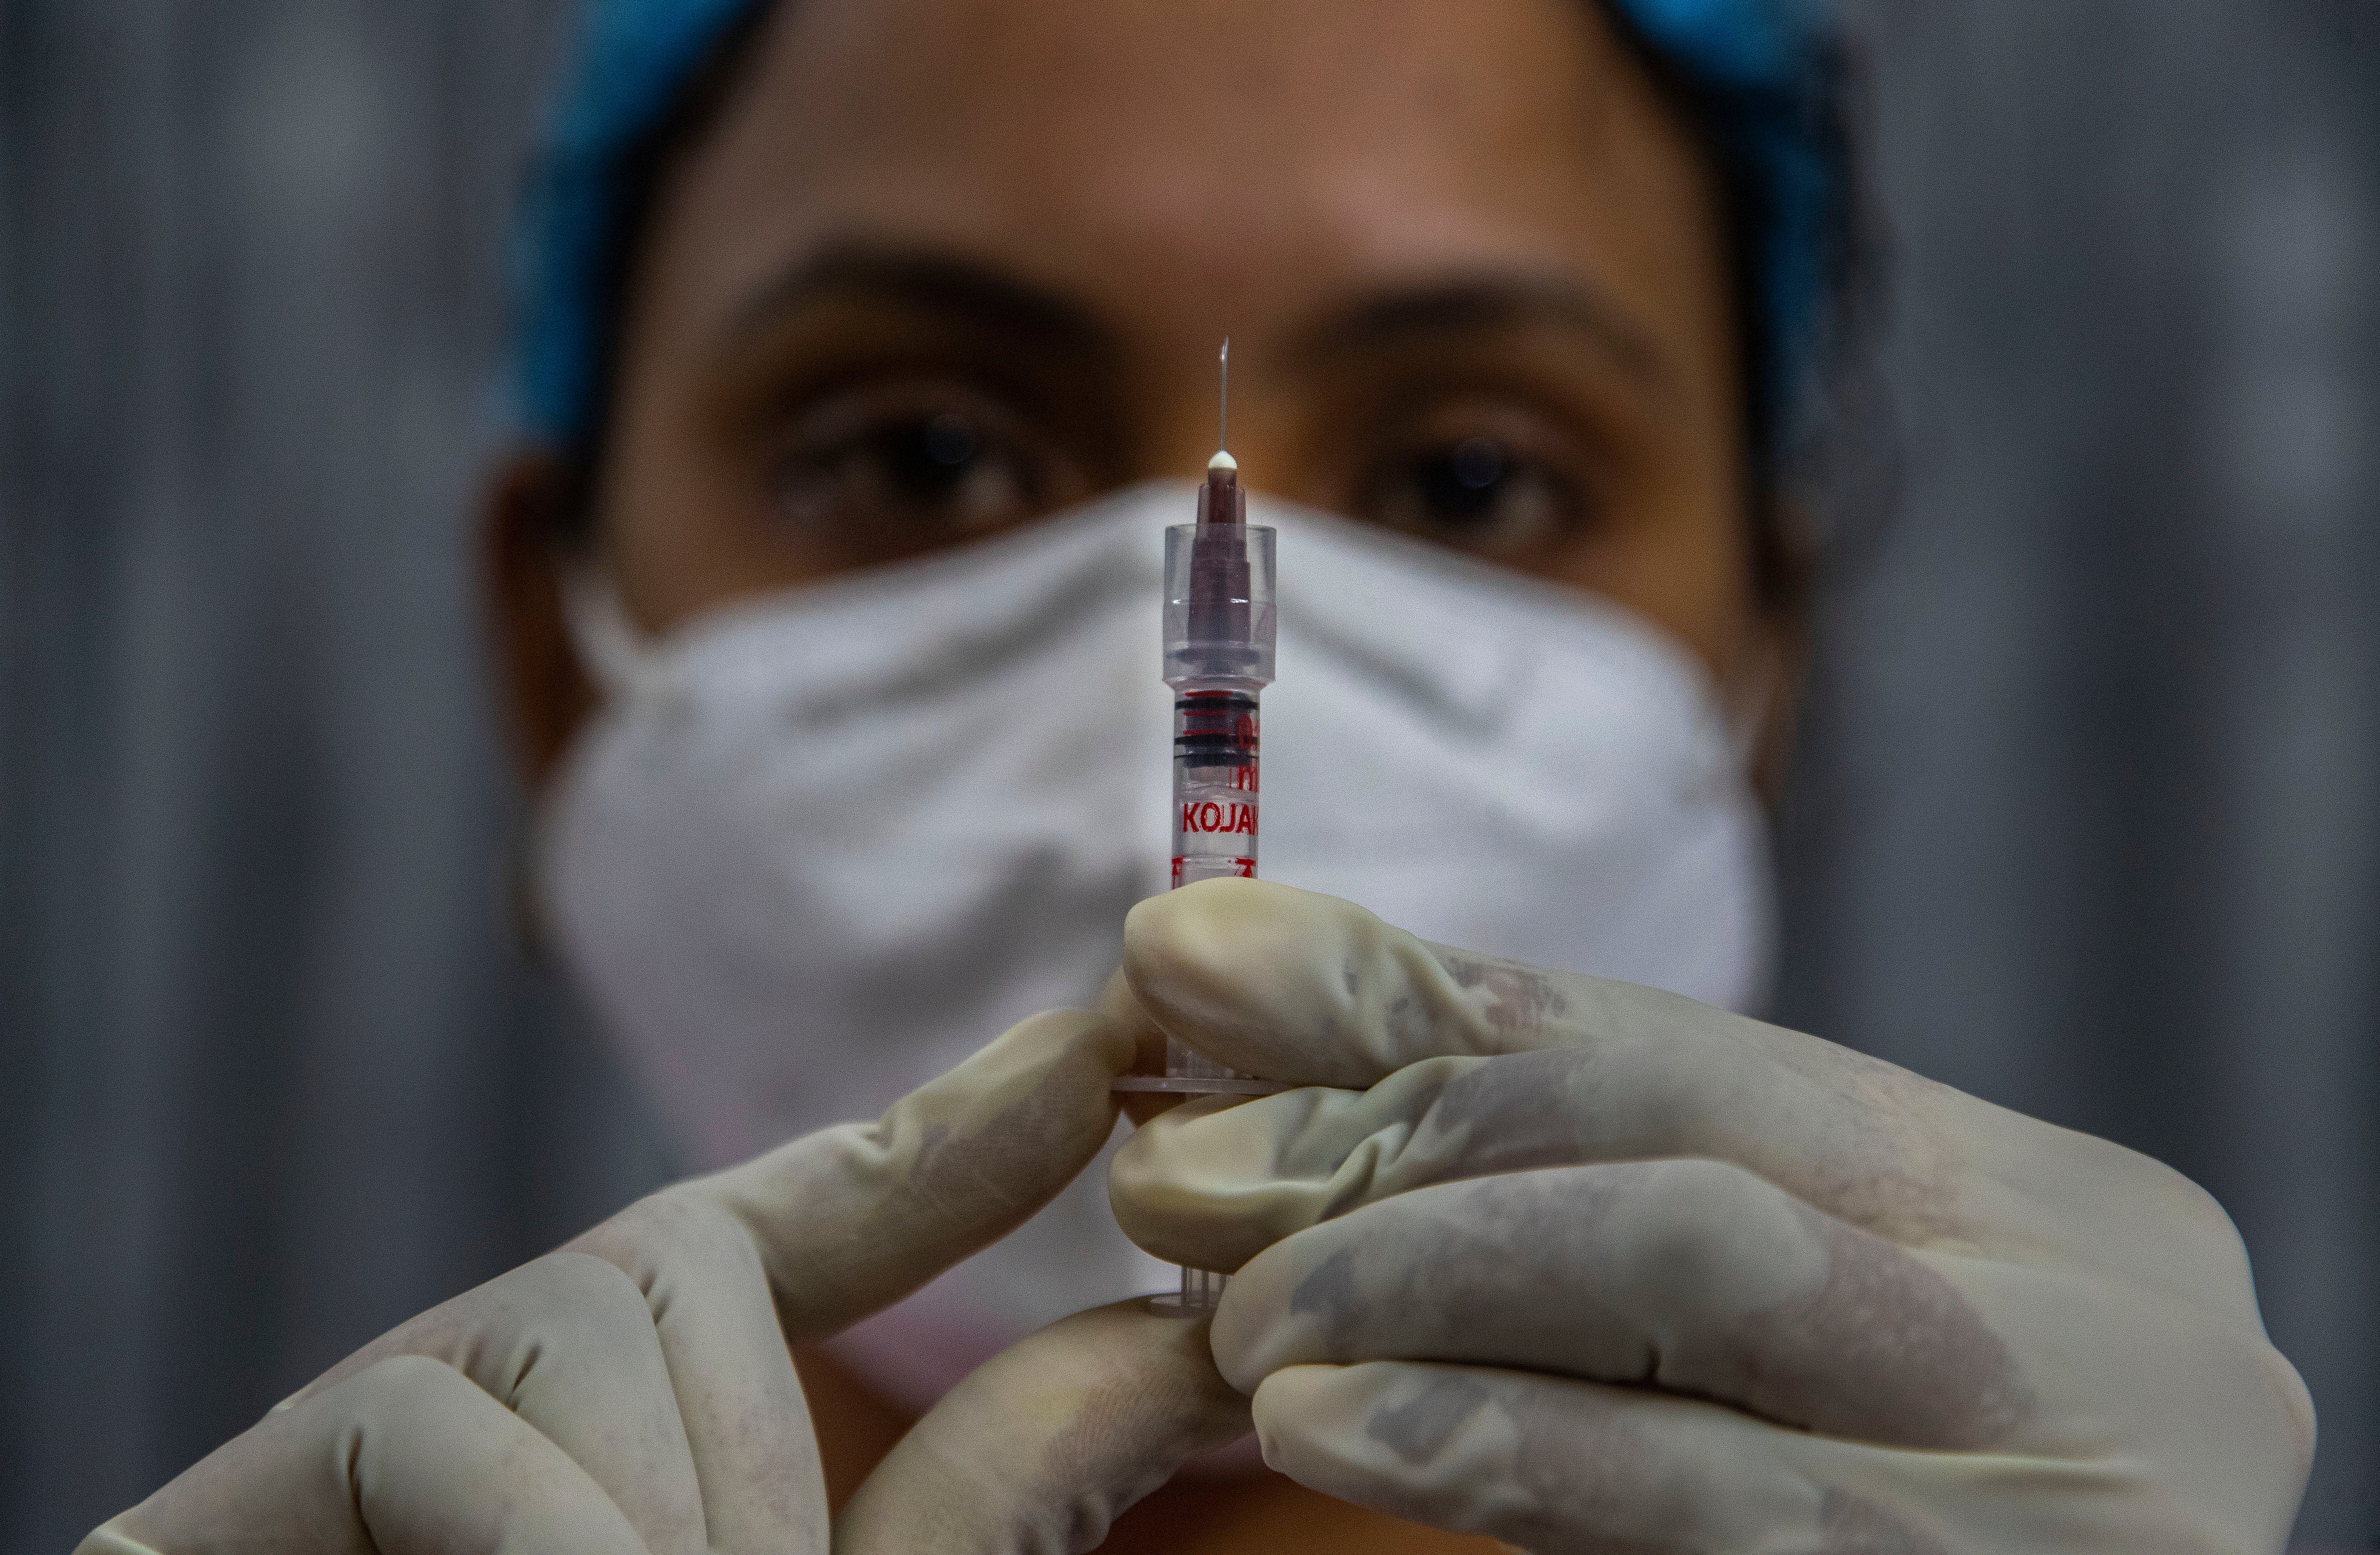 Virus Outbreak India Vaccine